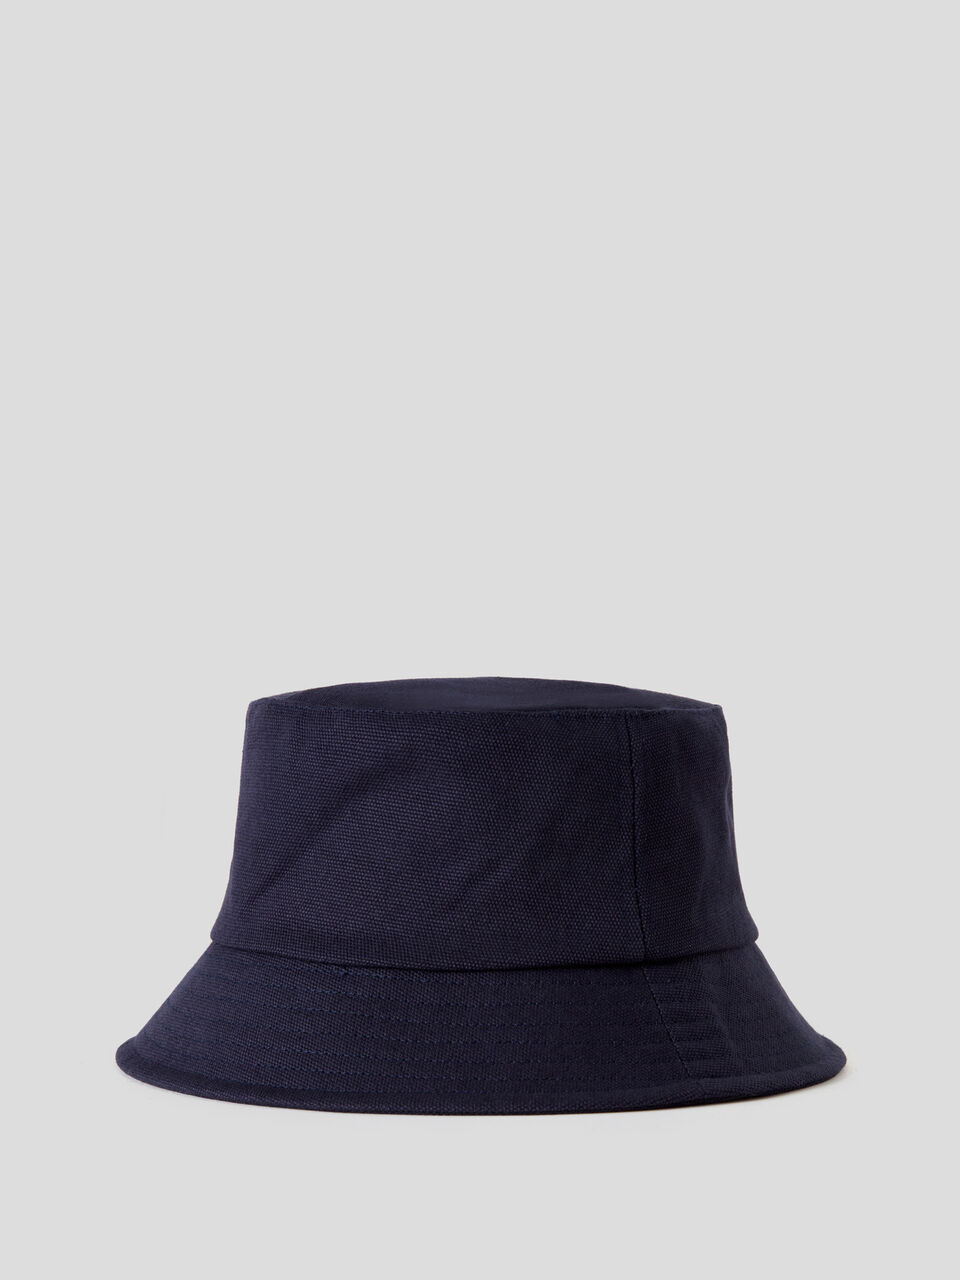 Fisherman's hat in 100% cotton - Dark Blue